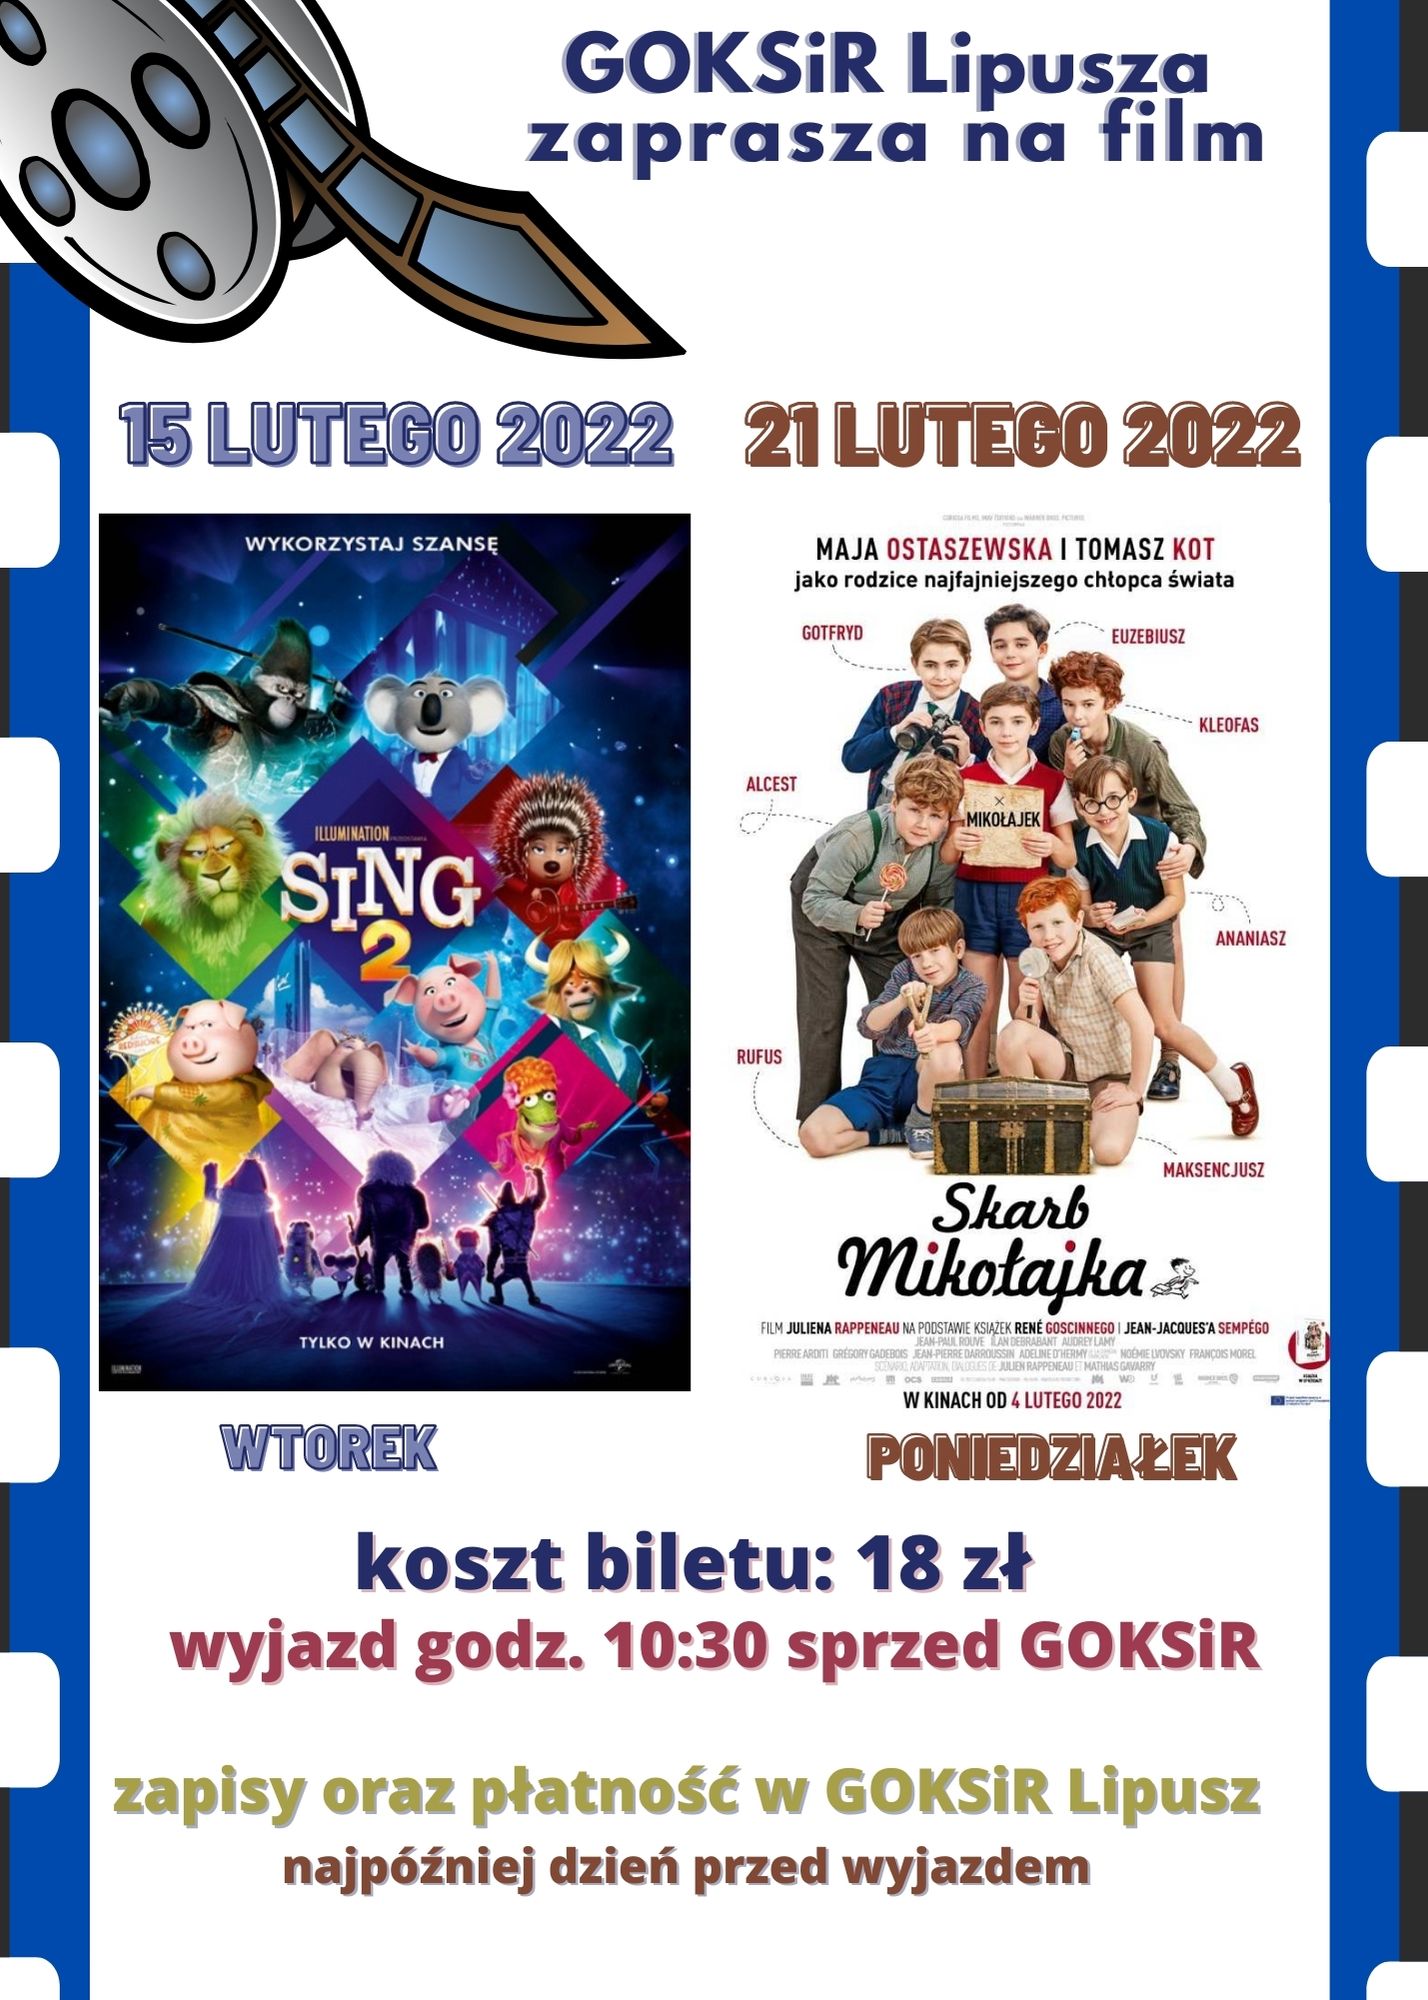 Plakat- Goksir w Lipuszu zaprasza na film "Sing 2" i "Skarb Mikołajka"